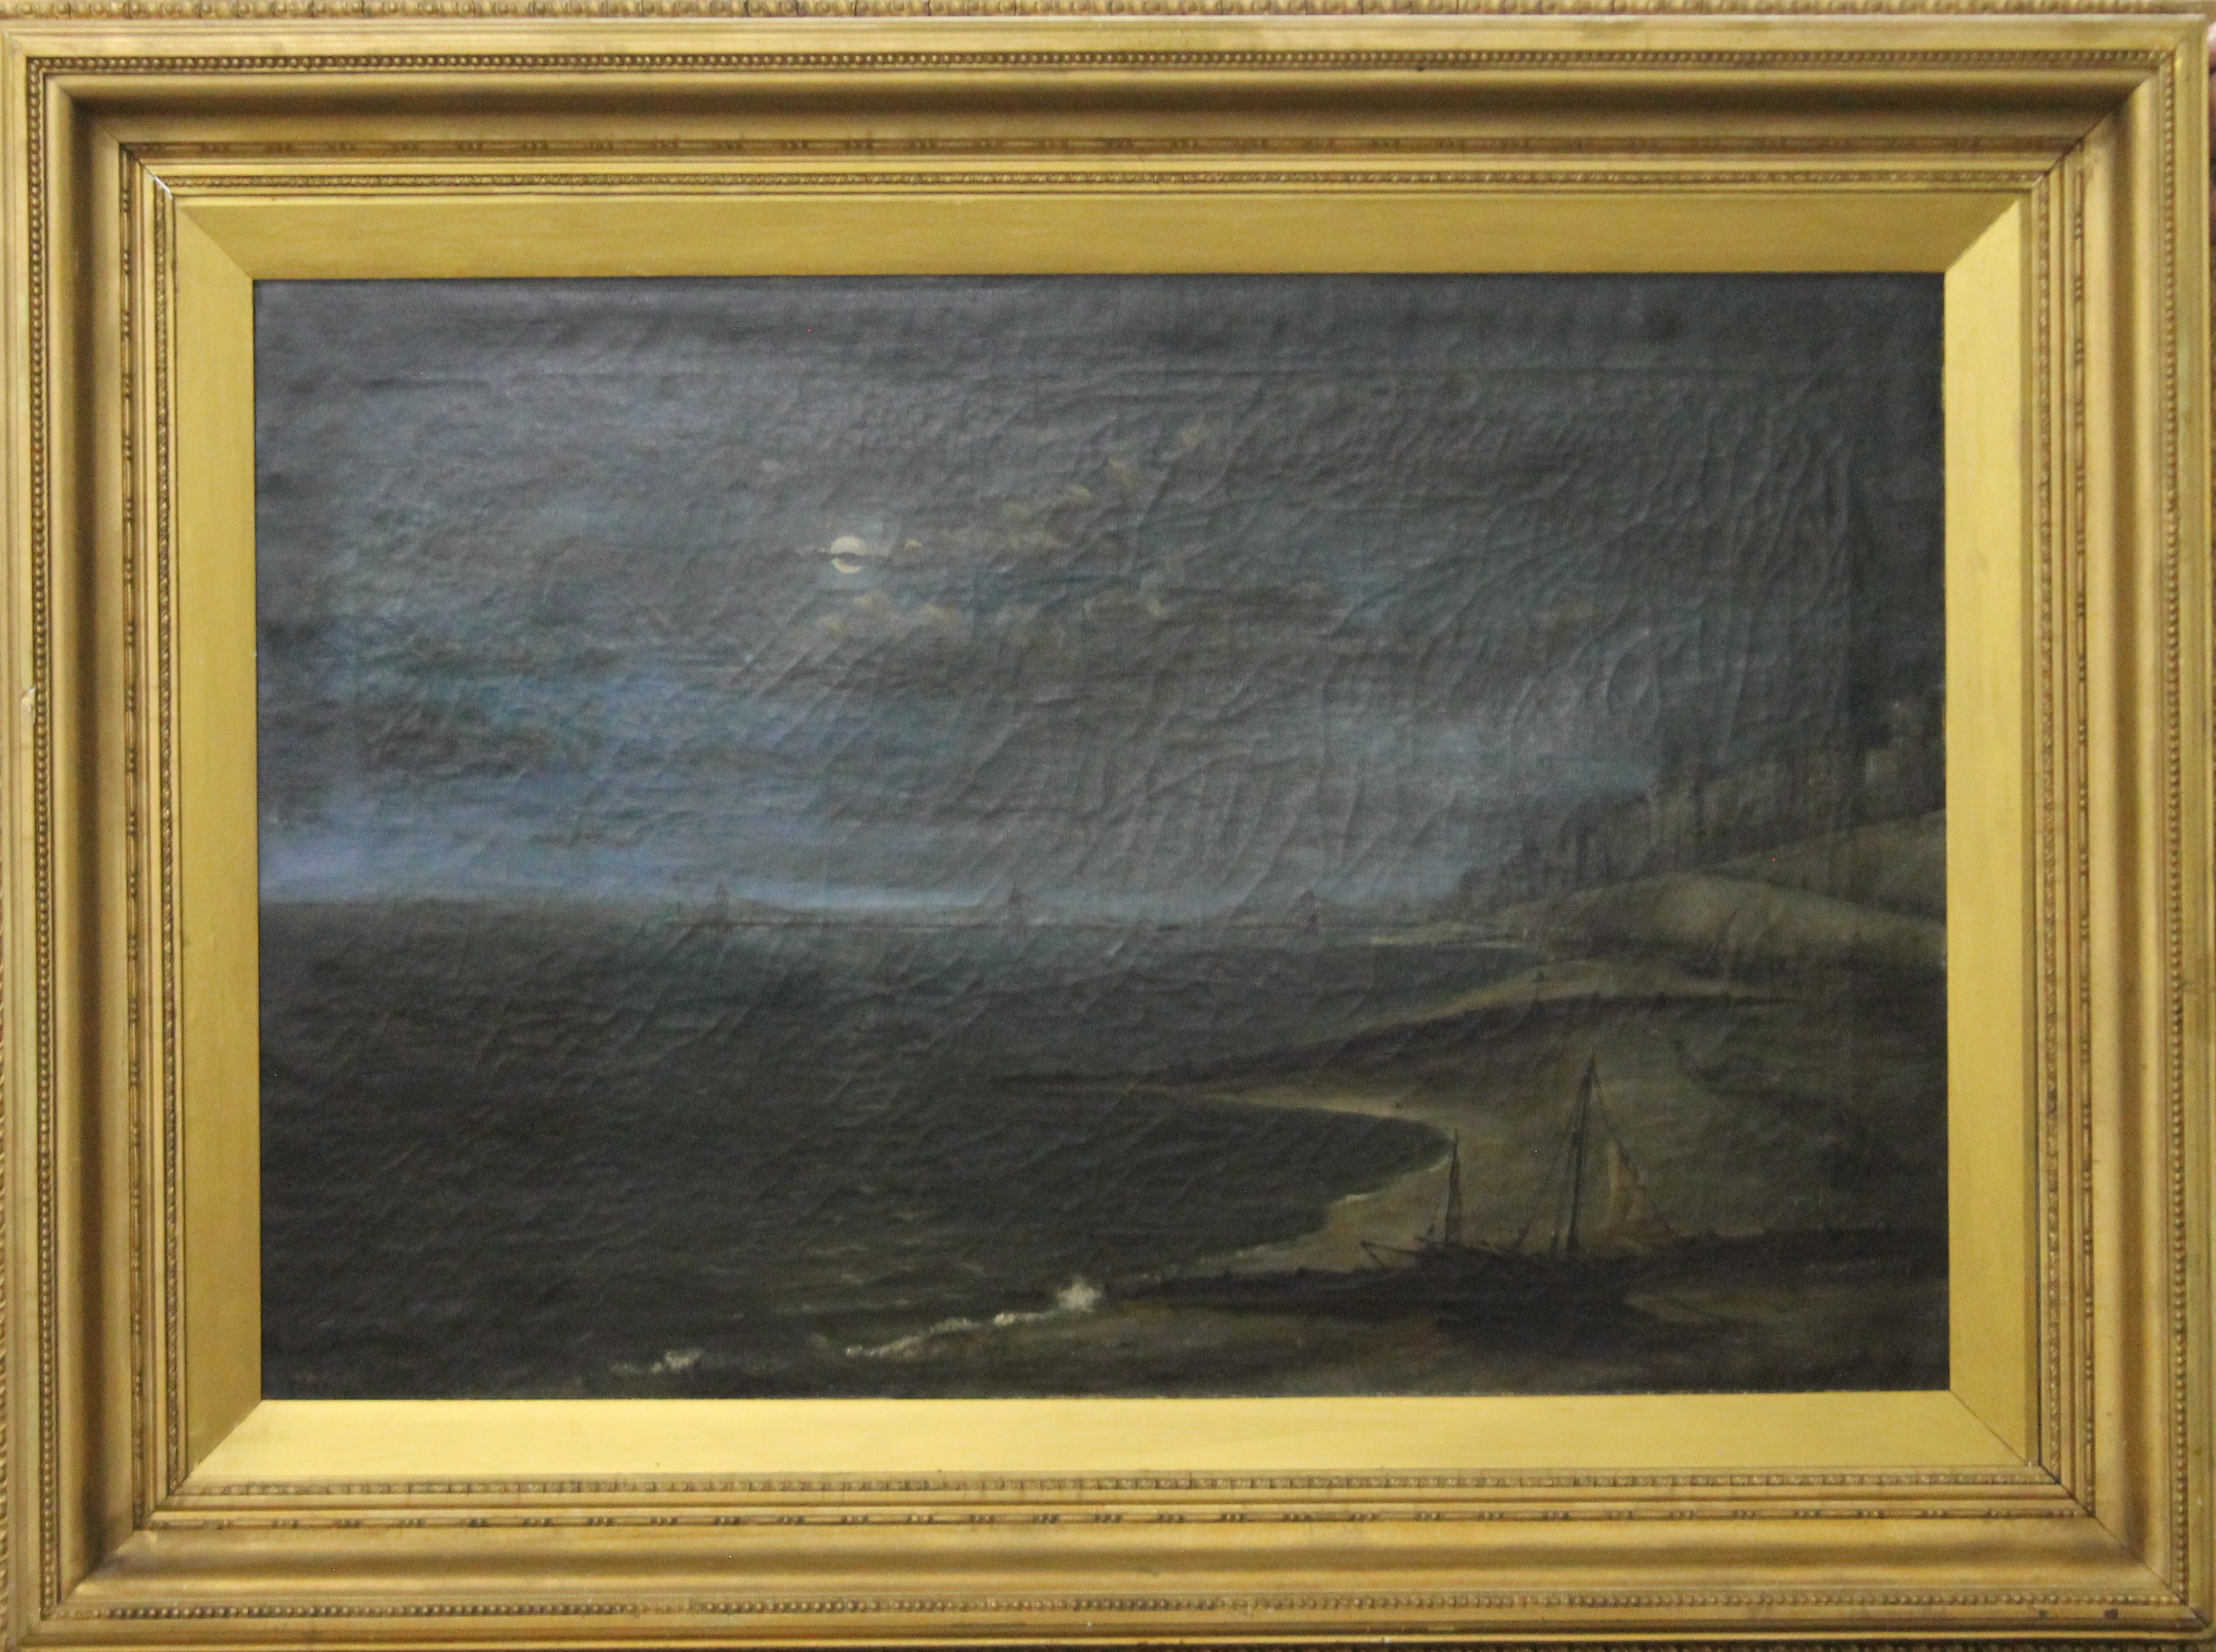 H M ASH, Moonlit Beach Scene, oil on canvas, framed. 75 x 50 cm. - Image 3 of 7